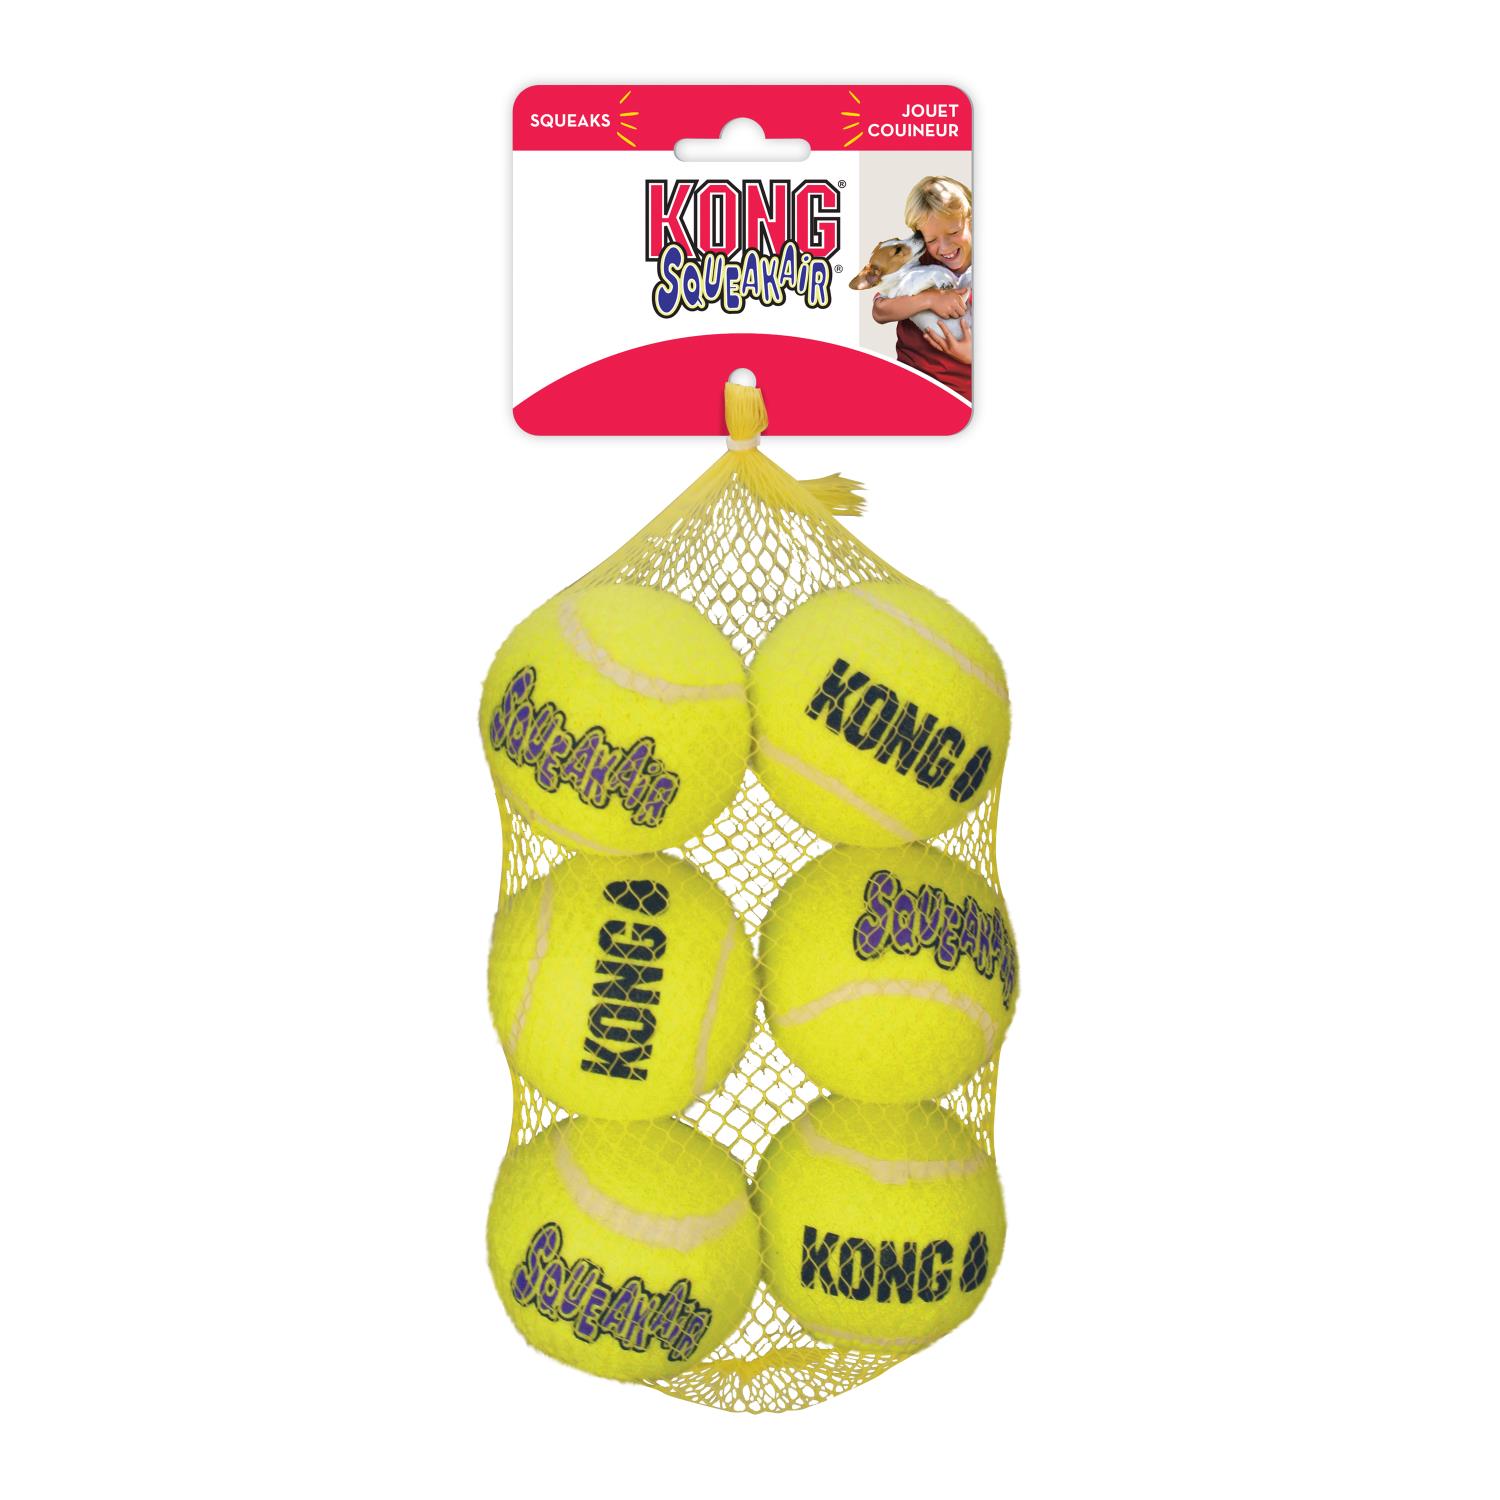 KONG AirDog Squeaker tennisball 6 stk i nett, medium